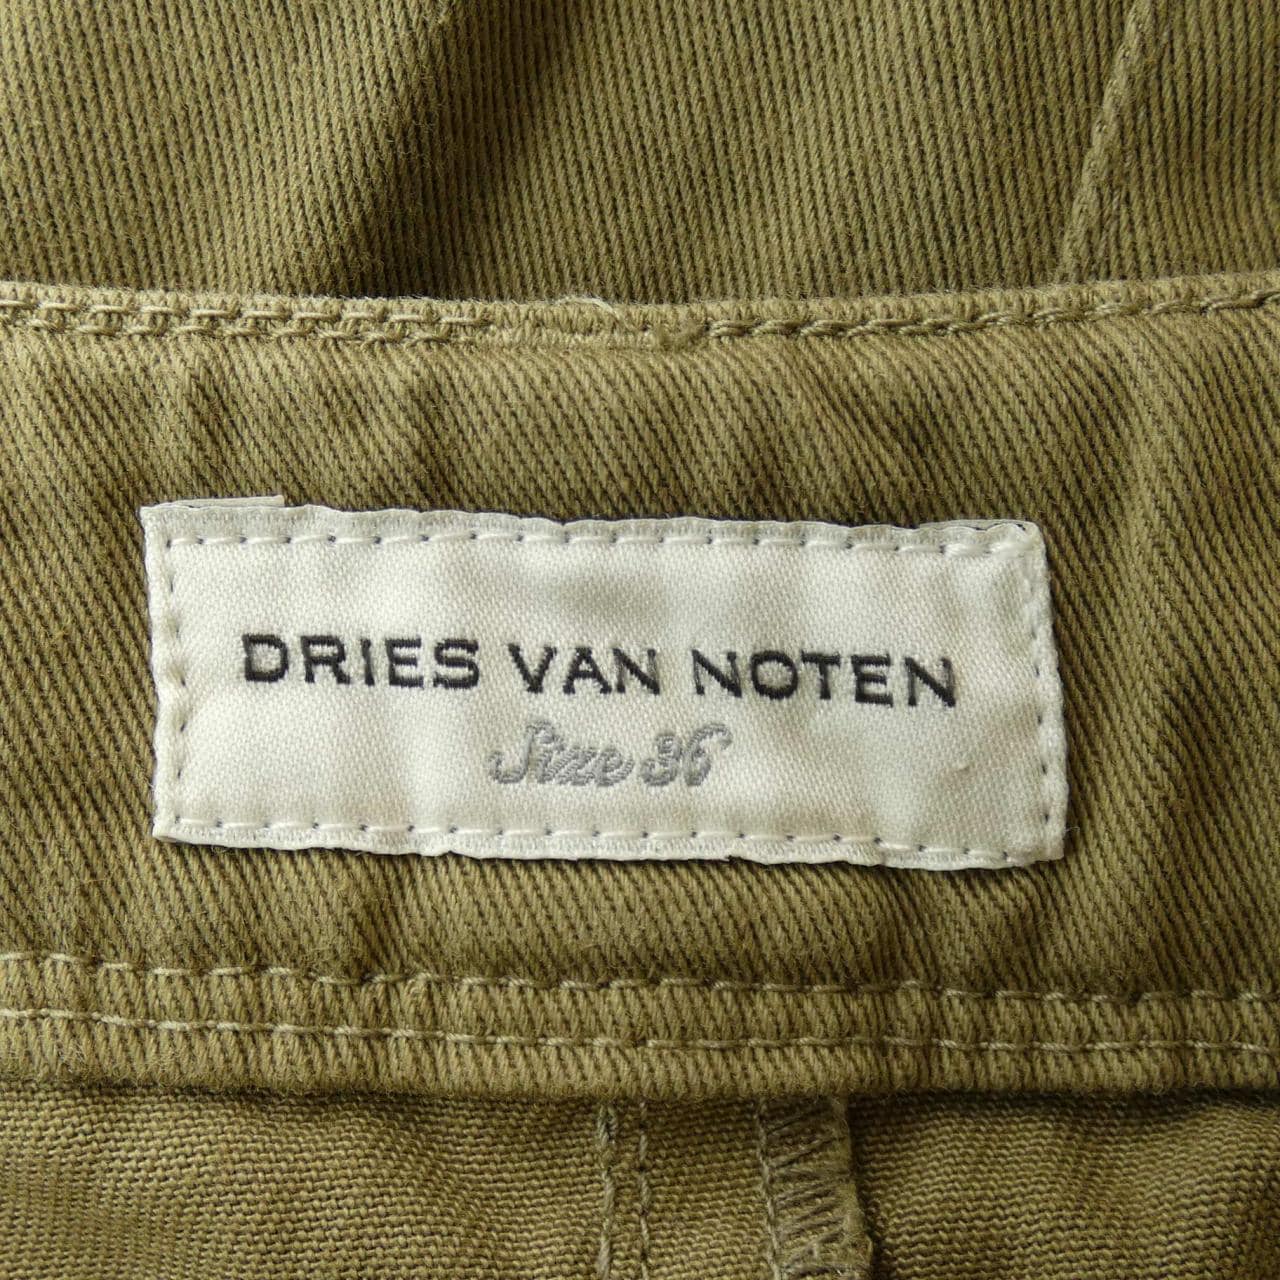 DRIES VAN NOTEN德賴斯·範諾頓 (Dries Van Noten) 半身裙